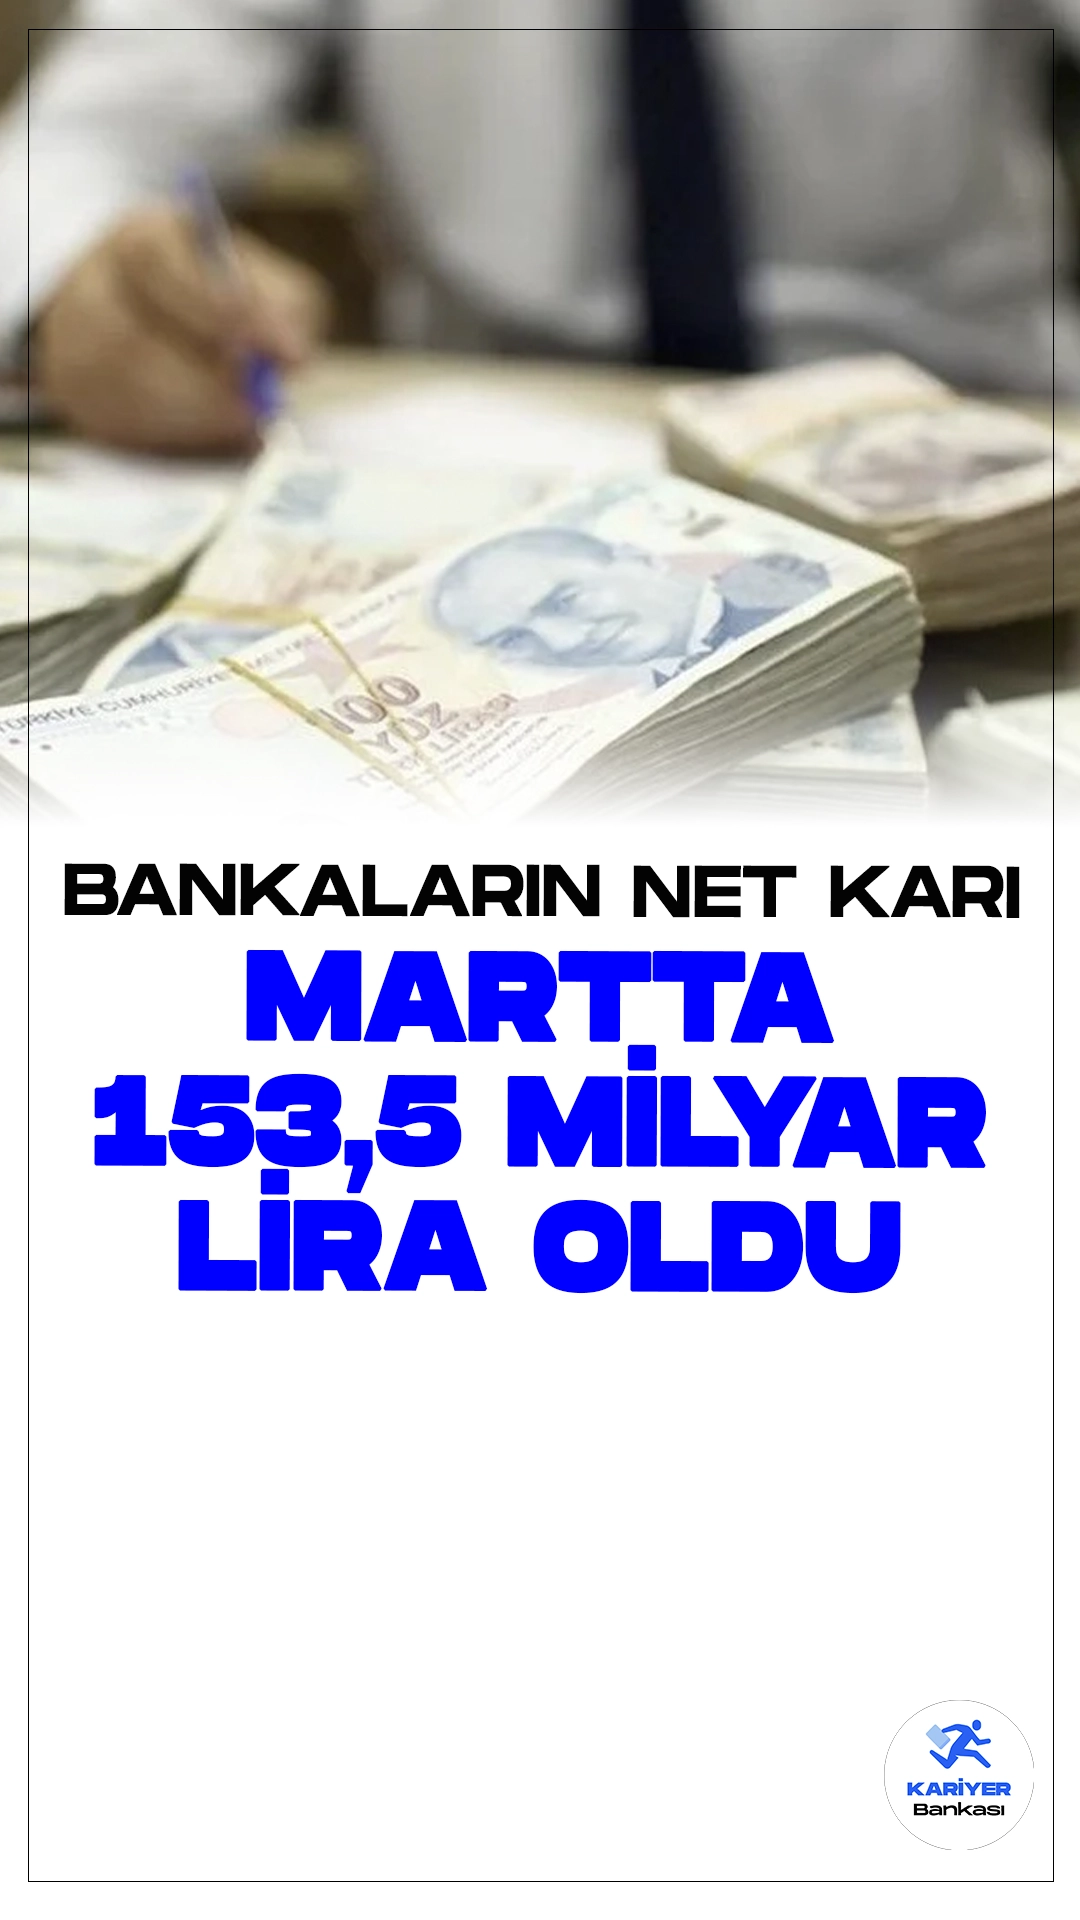 Bankaların Mart Ayındaki Net Karı Rekor Seviyeye Ulaştı: 153,5 Milyar Lira.Bankacılık sektörünün Mart ayındaki performansı dikkat çekiyor. Bankaların net karı, Mart 2024 döneminde 153,5 milyar lira olarak gerçekleşti.